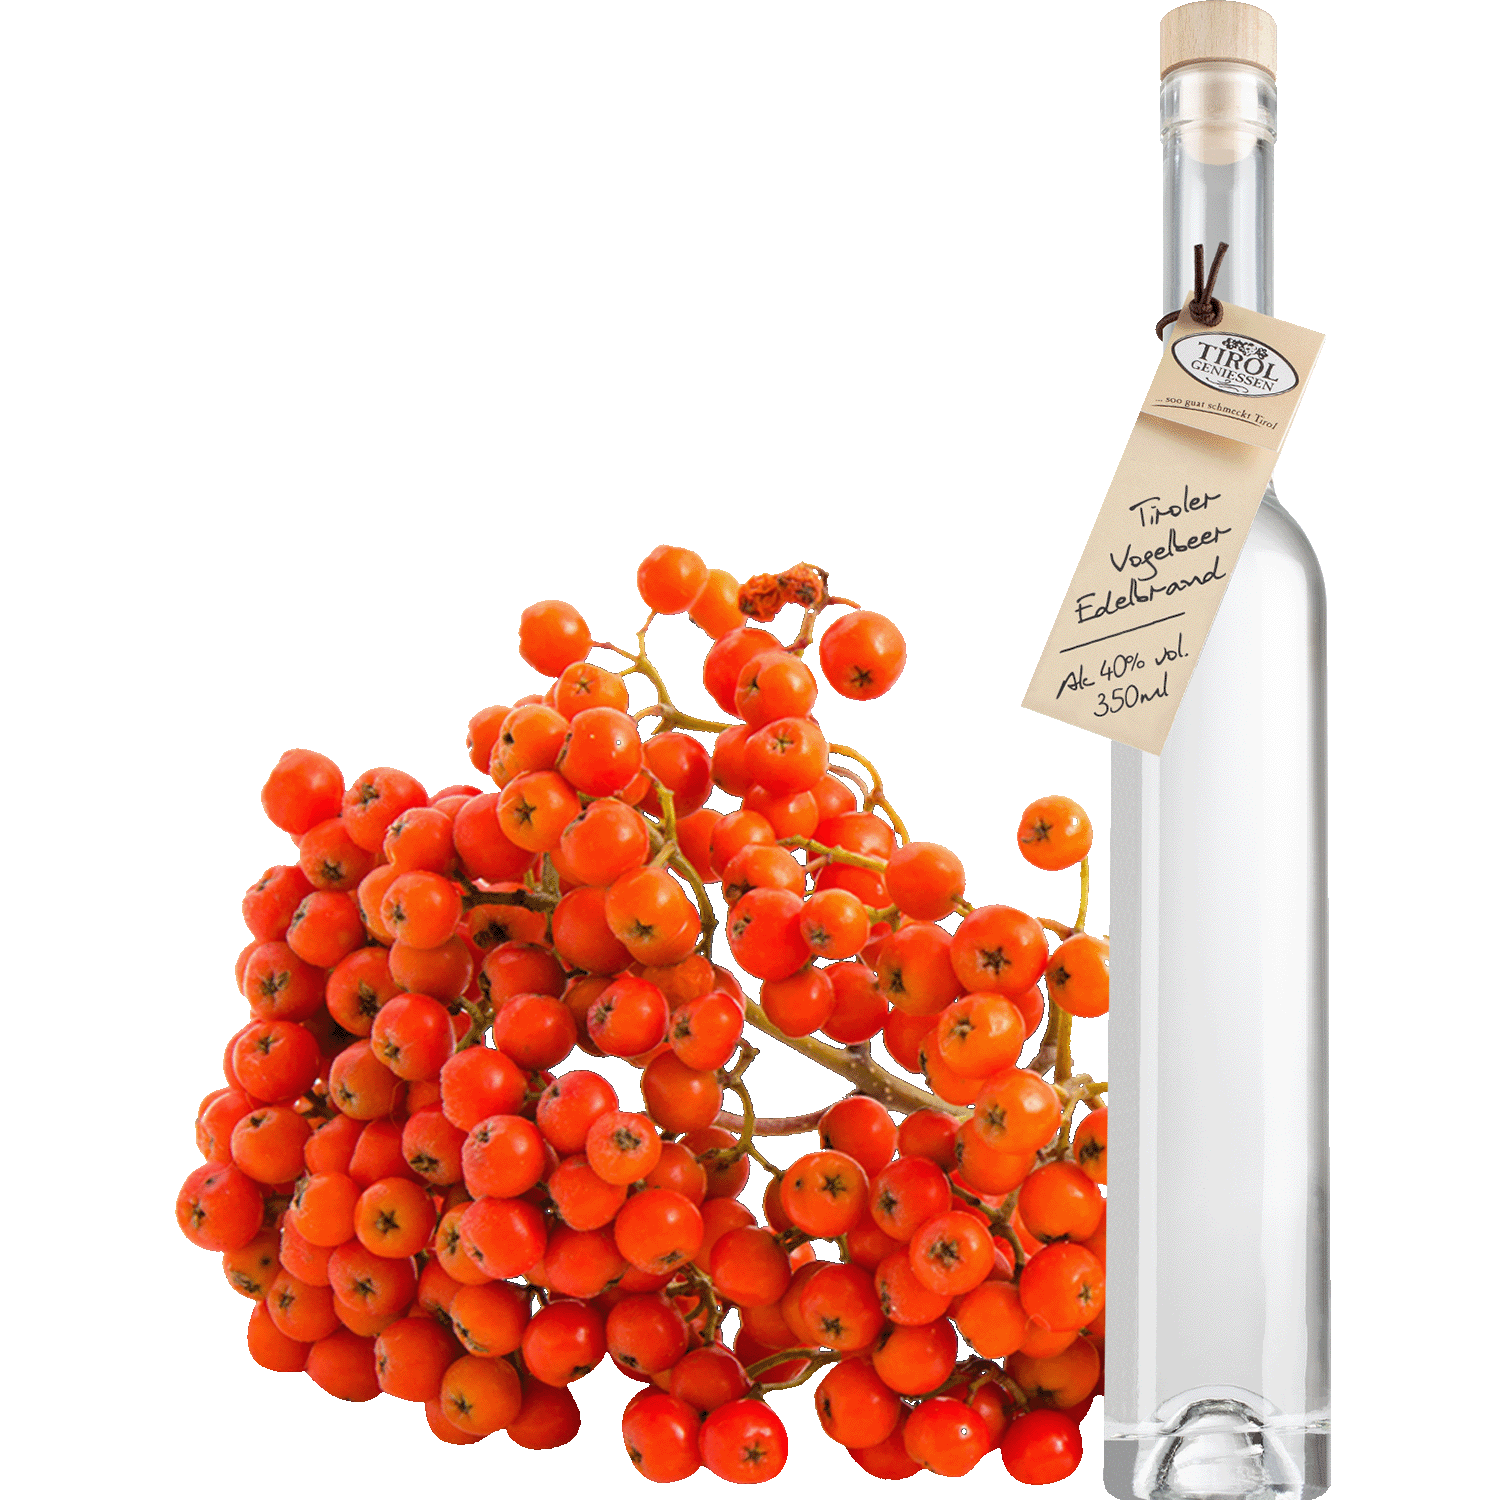 Rowan Berry Brandy in gift bottle from Austria from Tirol Geniessen